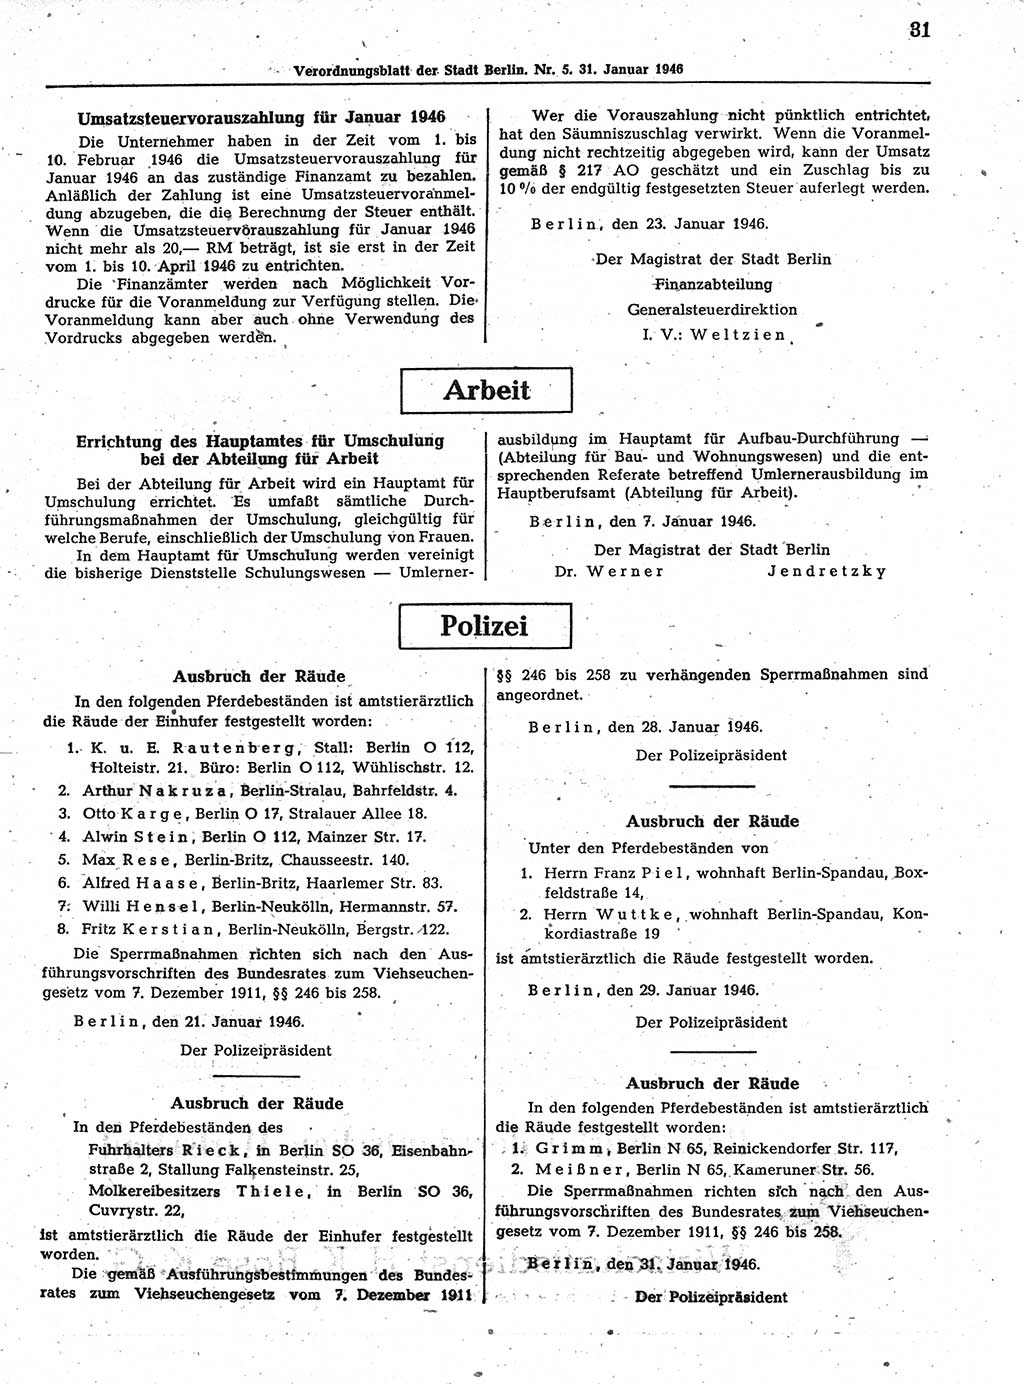 Verordnungsblatt (VOBl.) der Stadt Berlin, für Groß-Berlin 1946, Seite 31 (VOBl. Bln. 1946, S. 31)